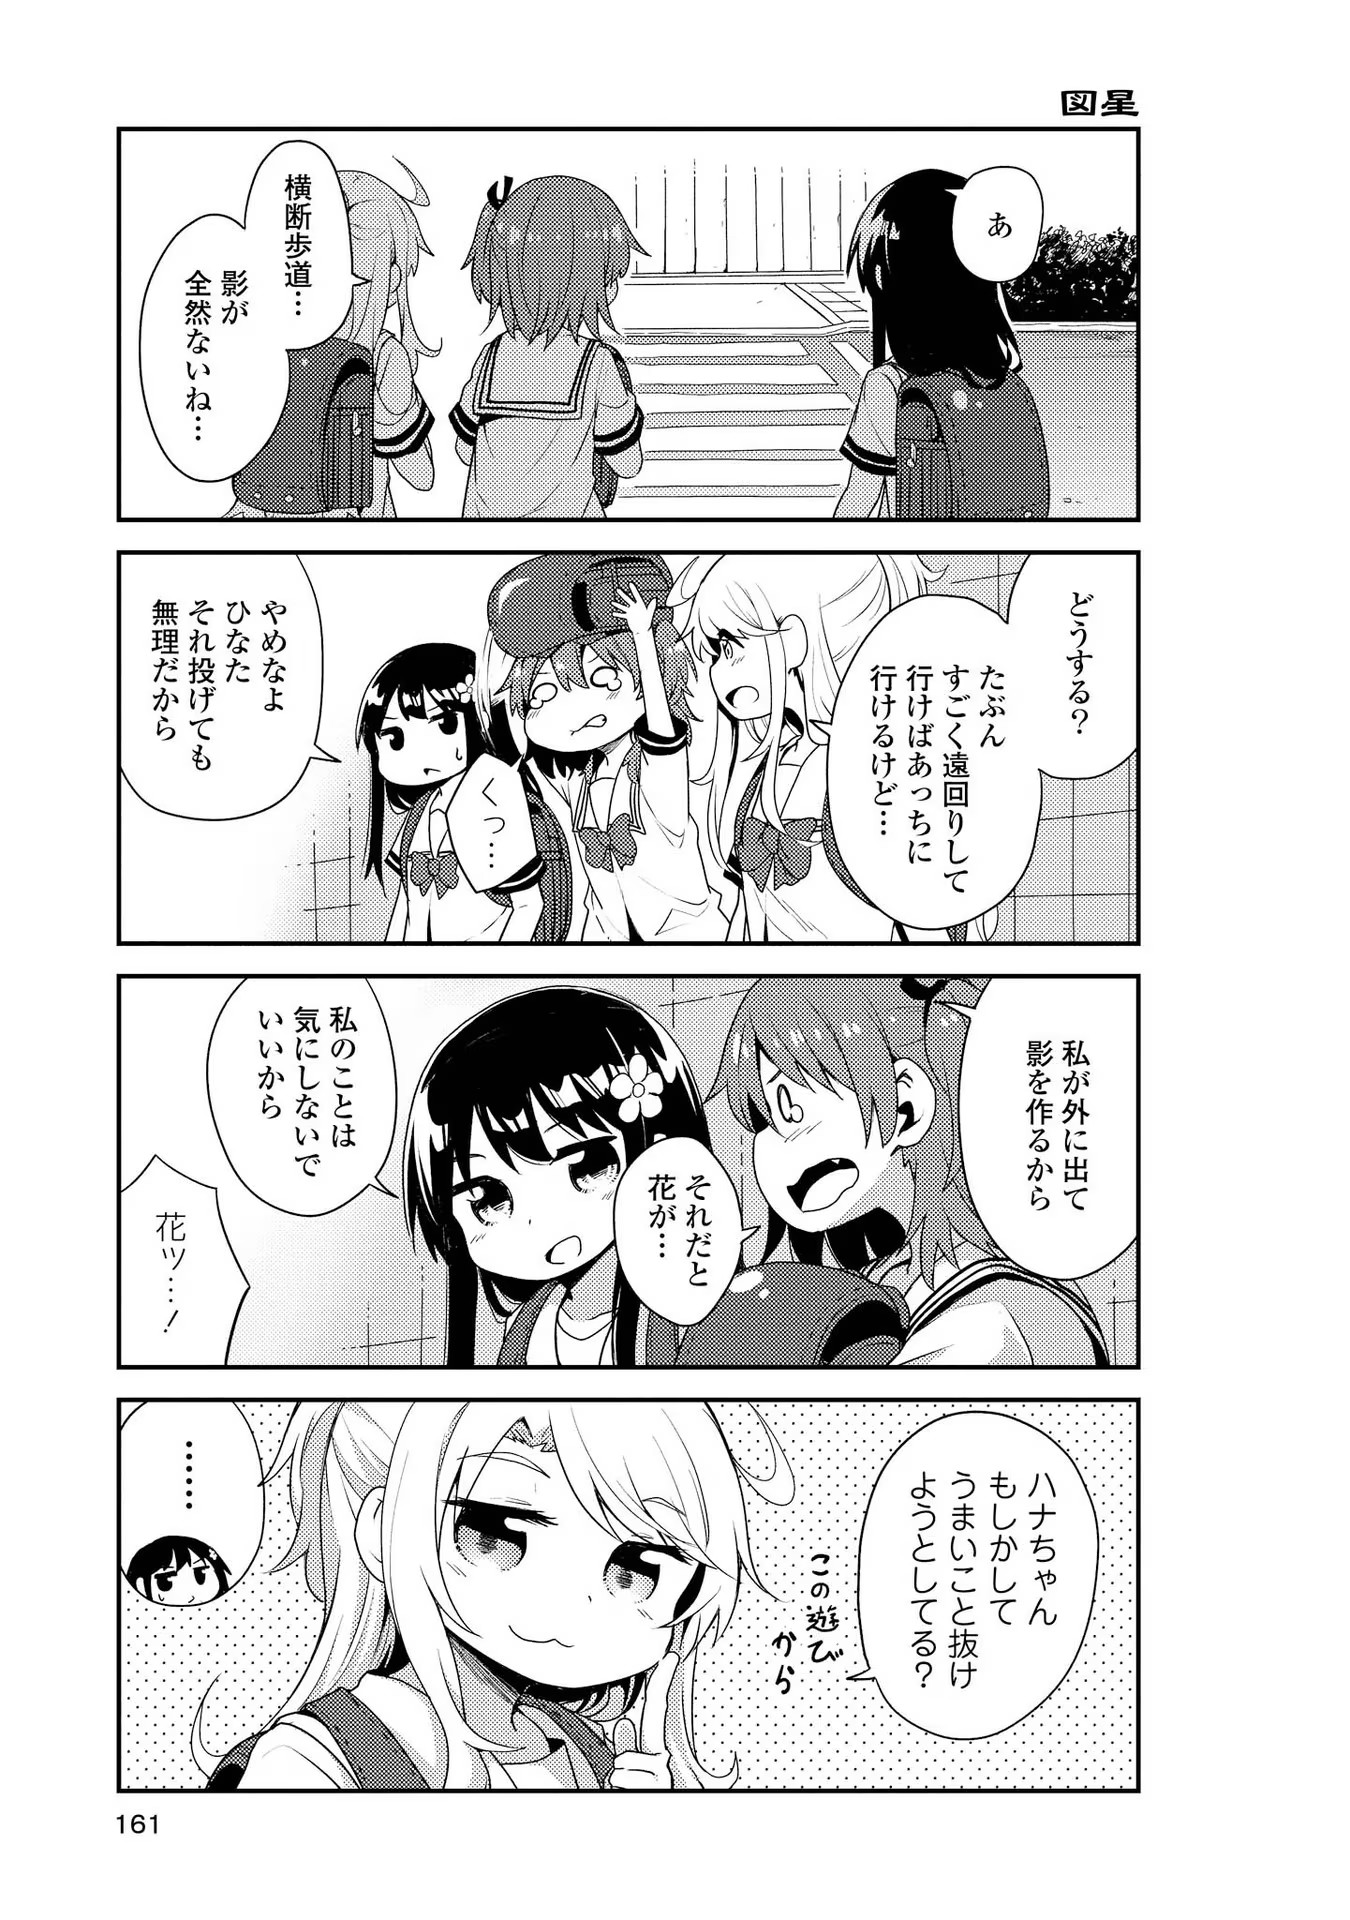 Watashi ni Tenshi ga Maiorita! - Chapter 10.5 - Page 5